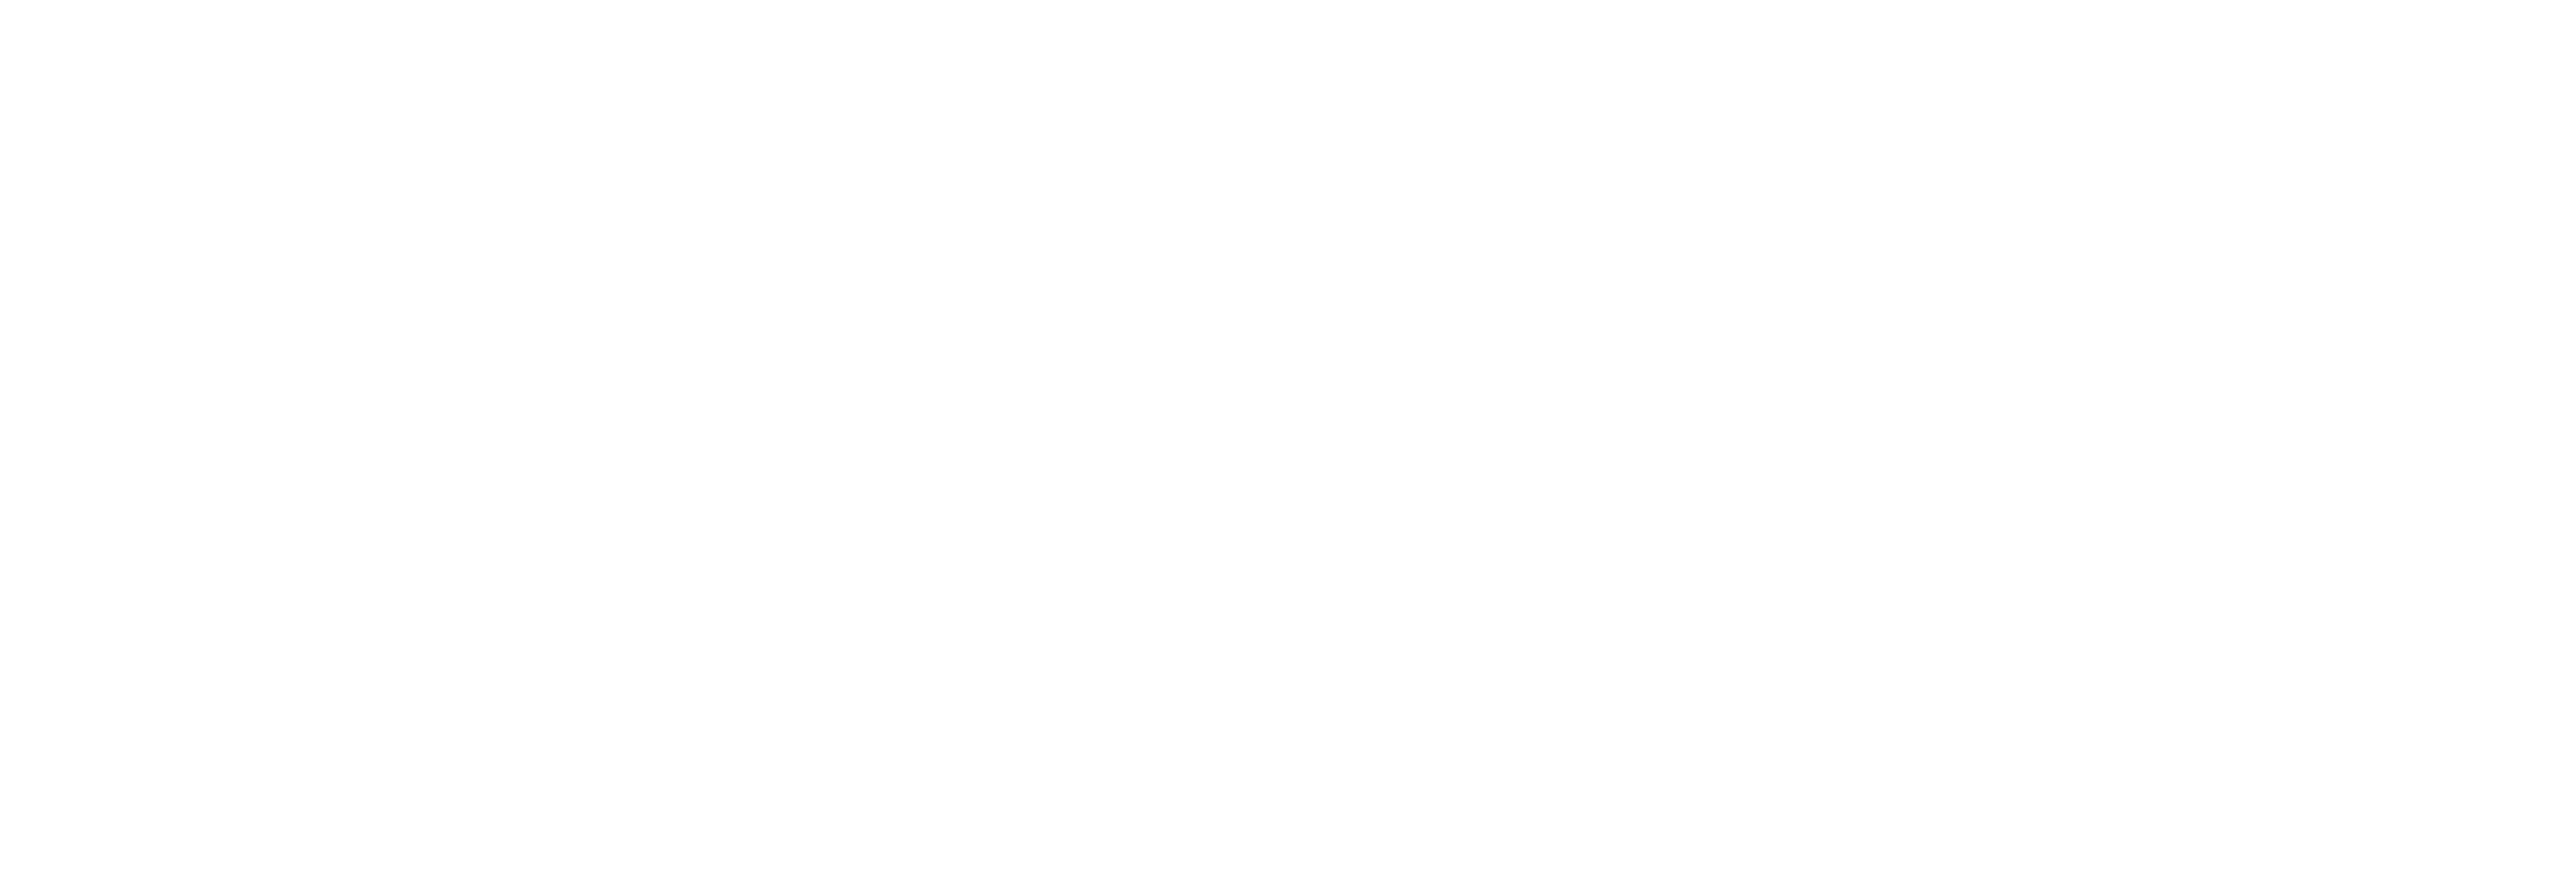 Diergeneeskundig Verwijscentrum Dordrecht logo